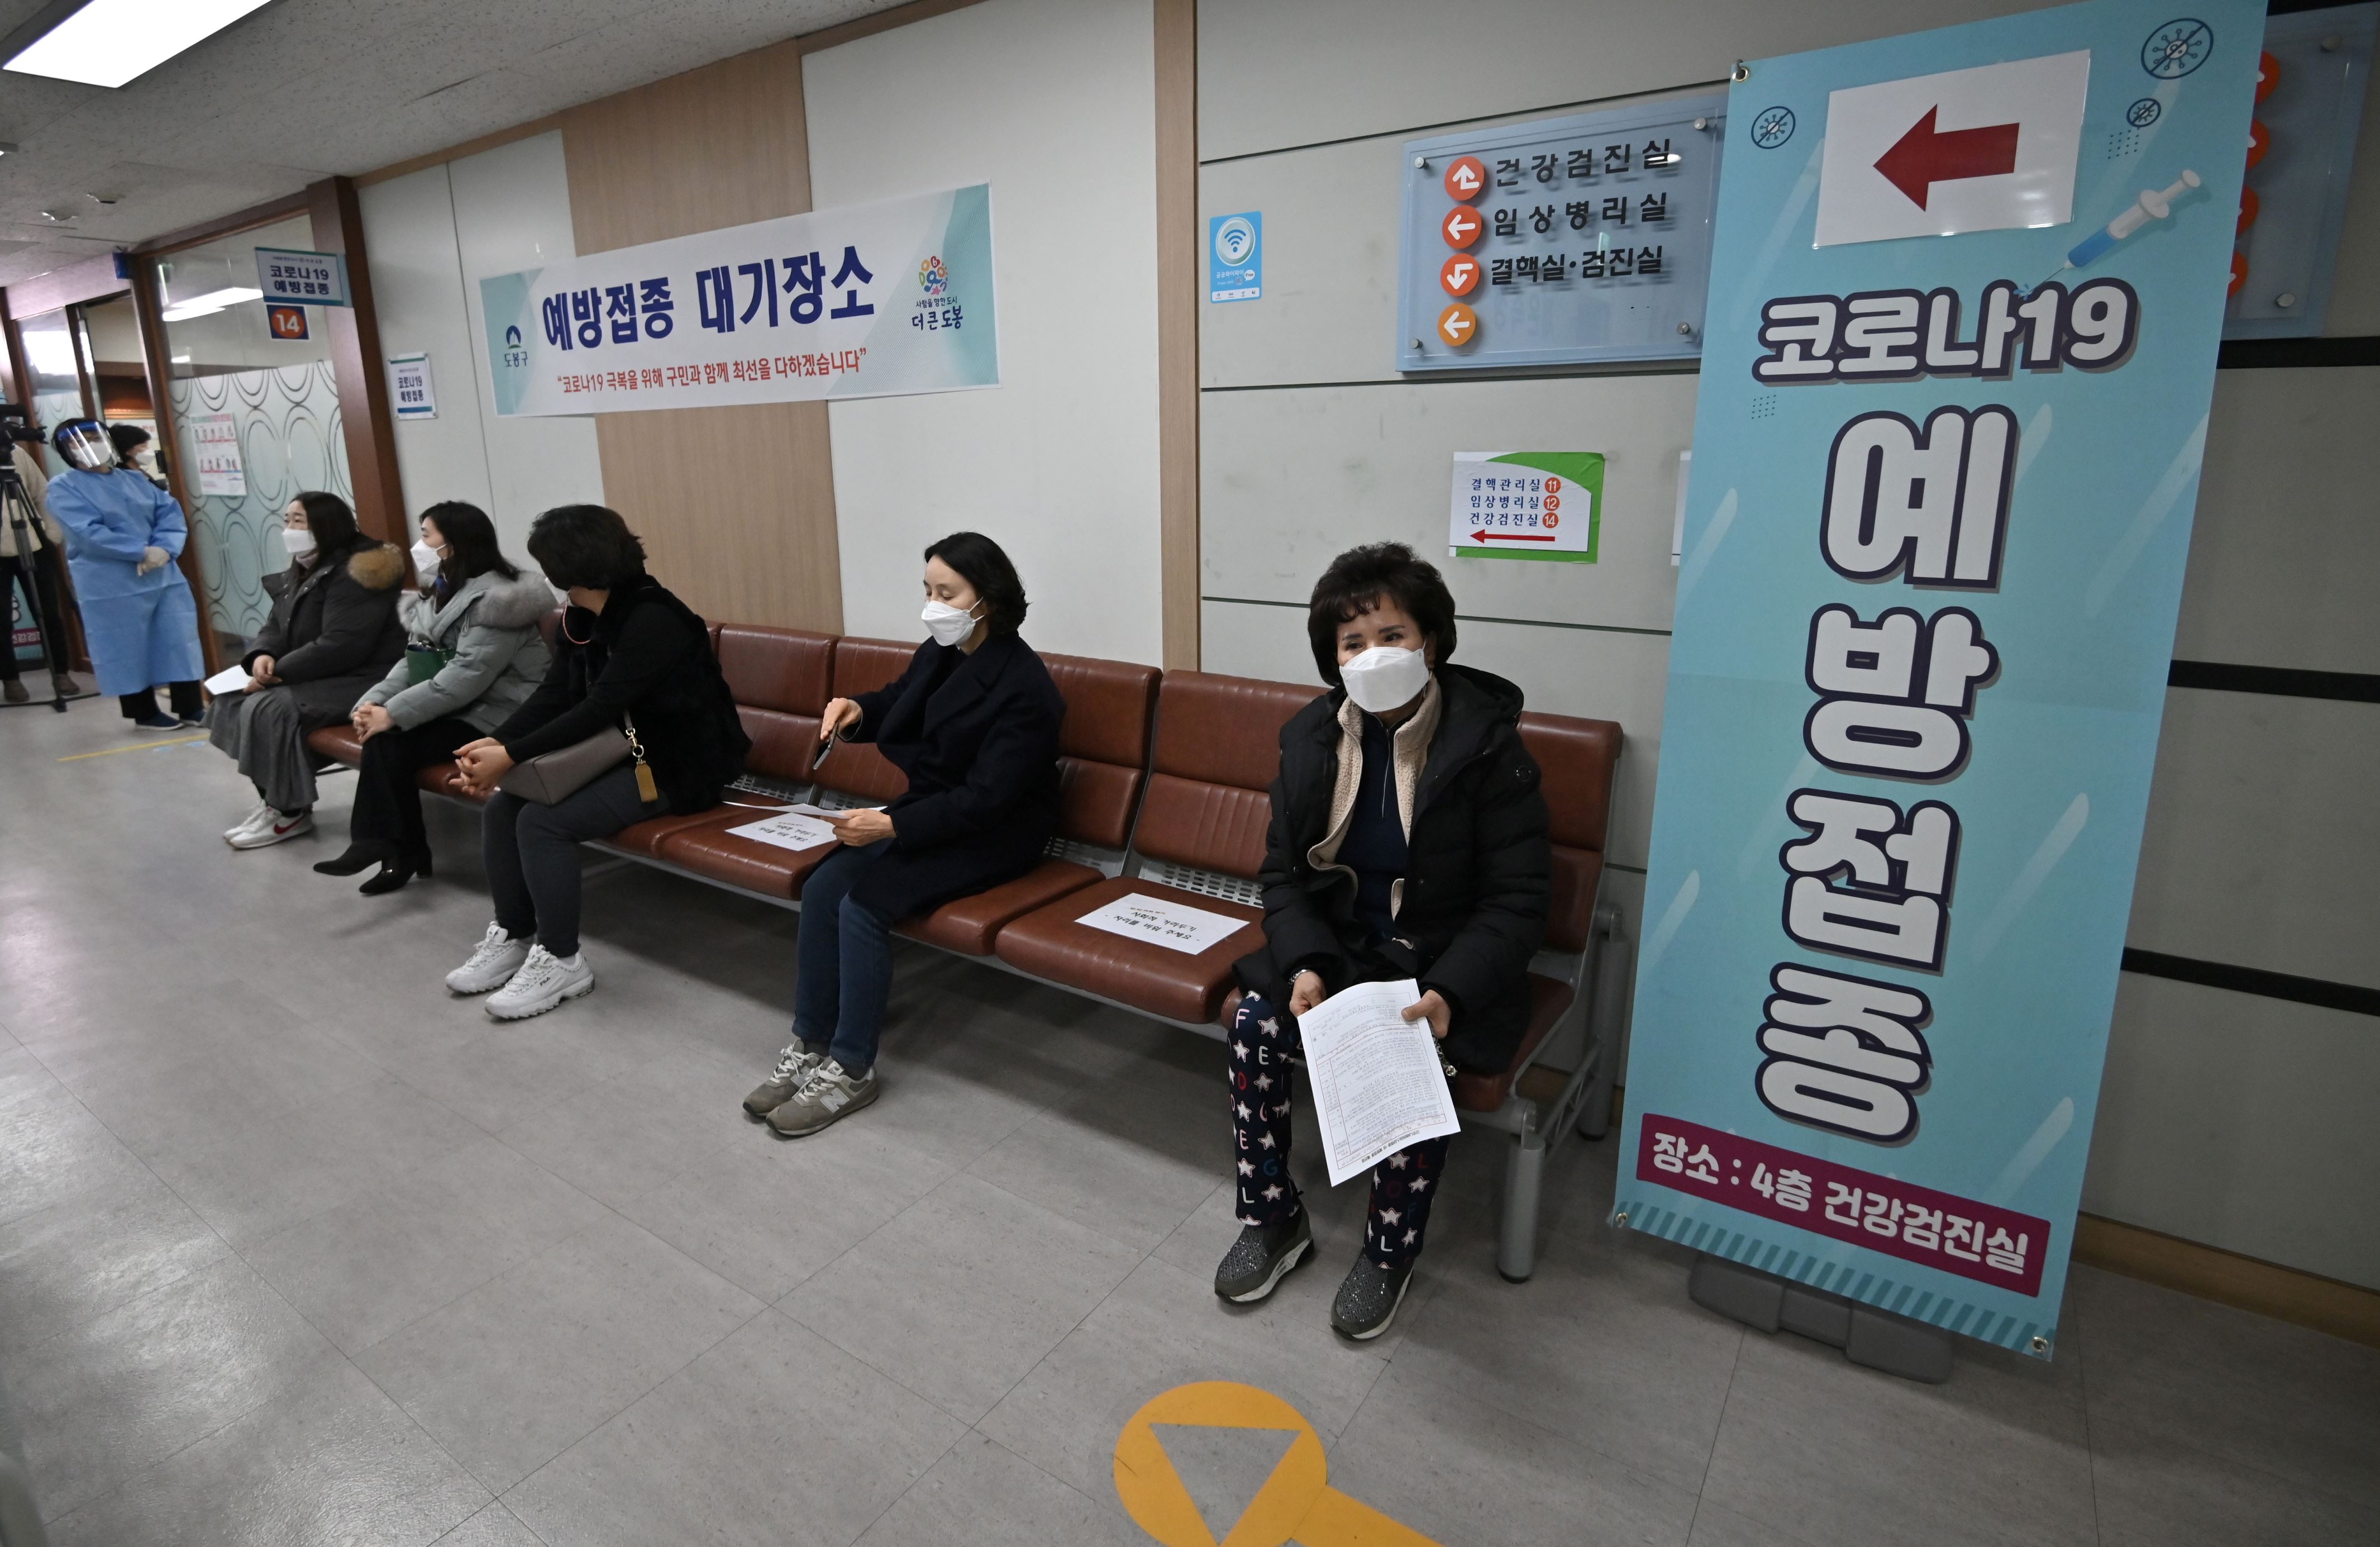 一群坐在商店前的人：韩国启动了COVID-19疫苗接种运动